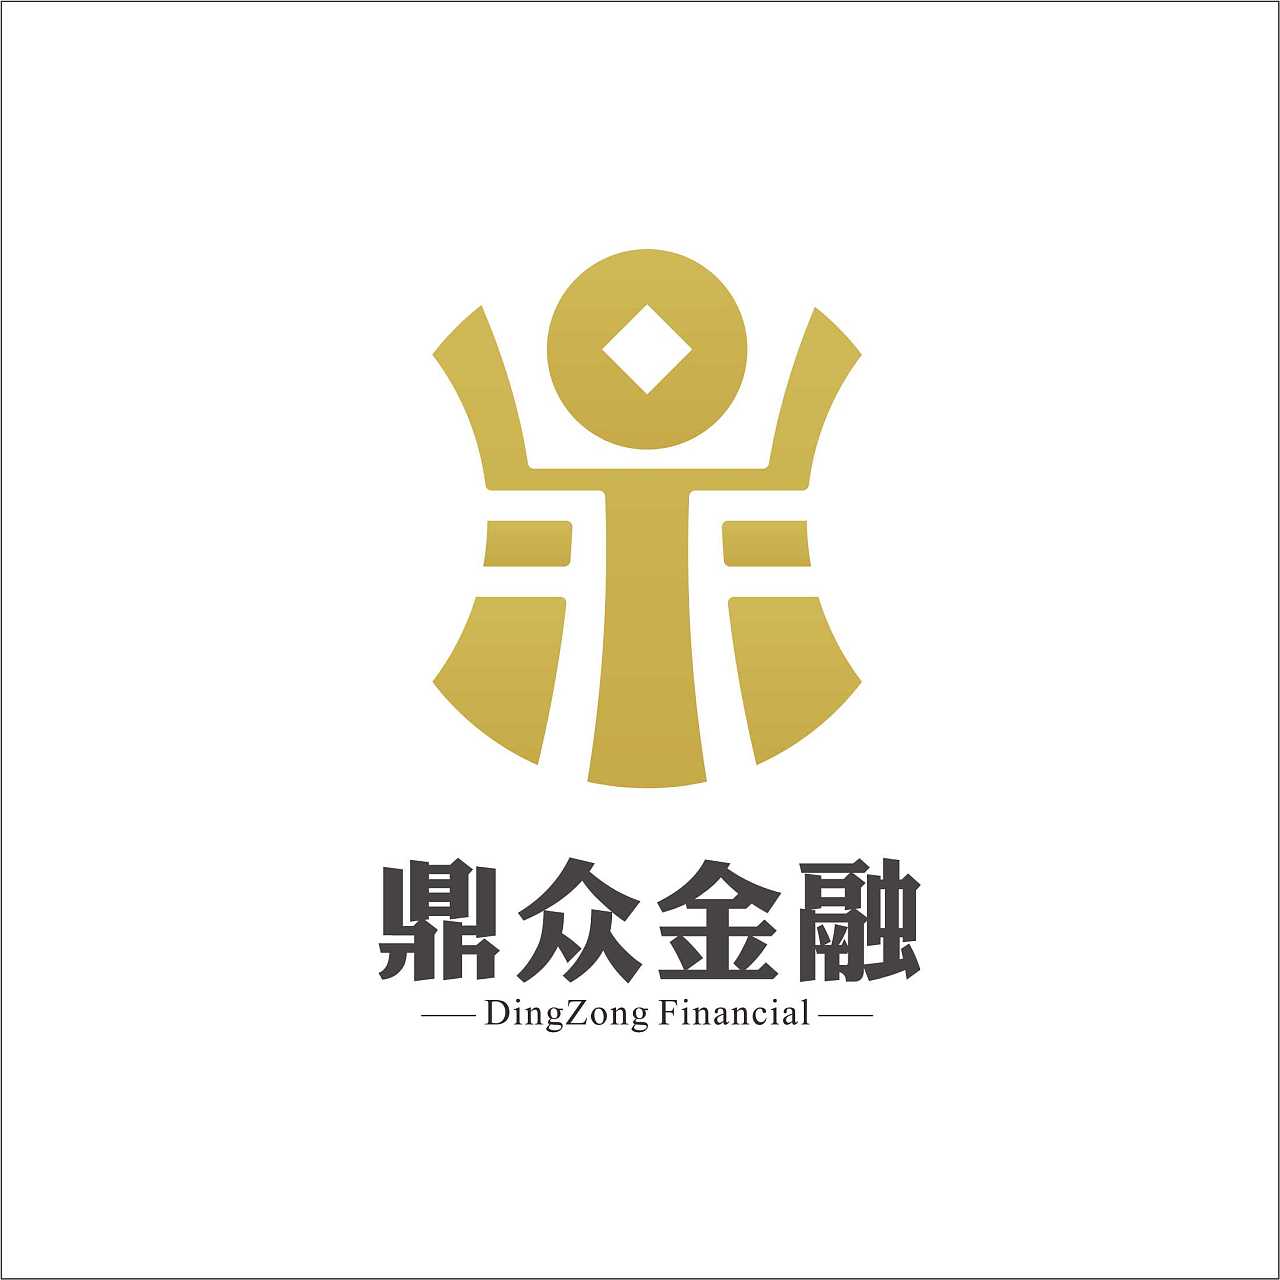 鼎众金融logo一枚